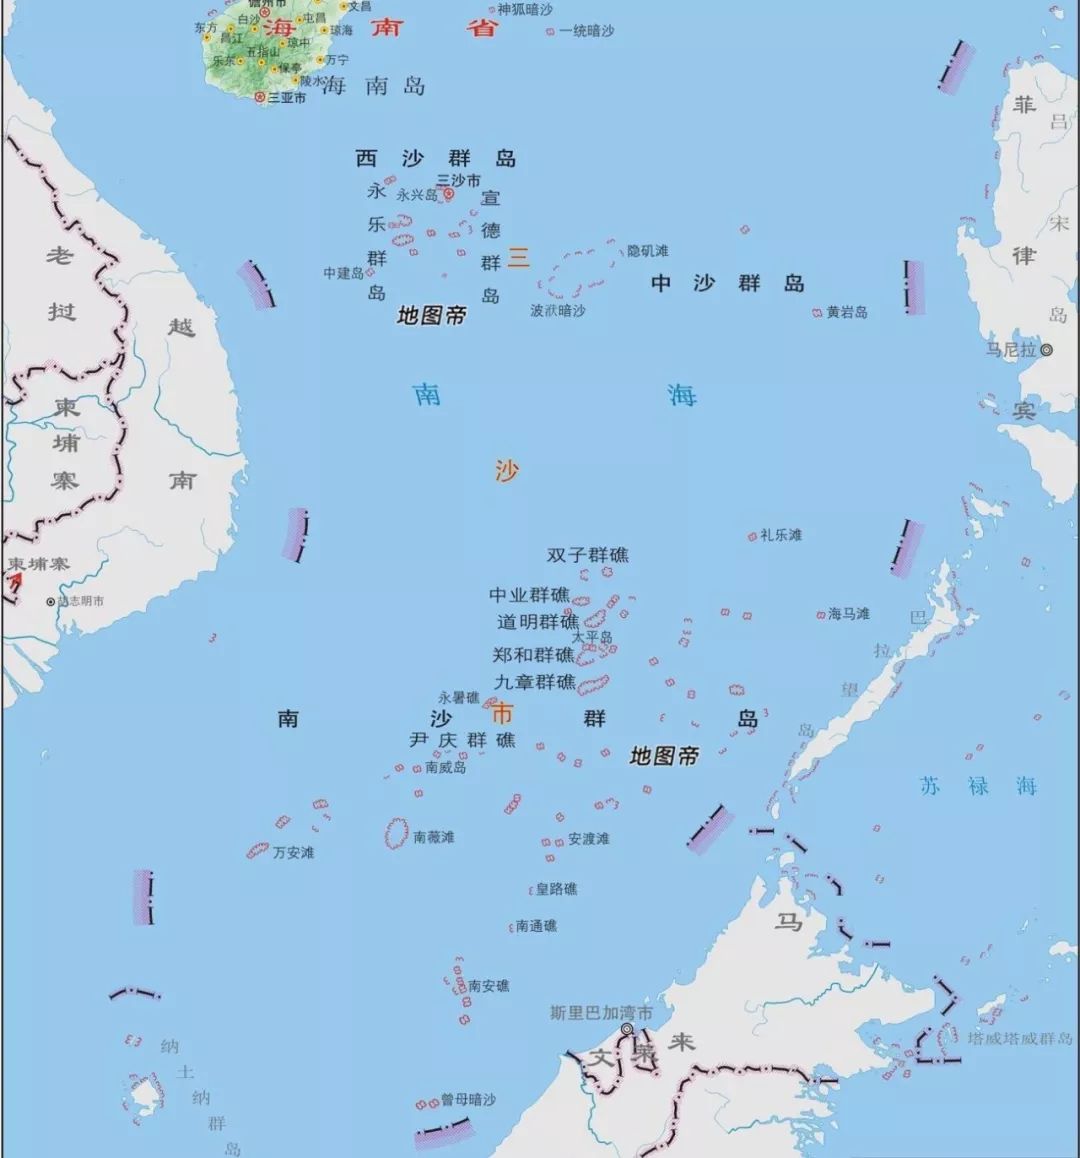 67南沙南薇滩静静地躺在祖国的南中国海